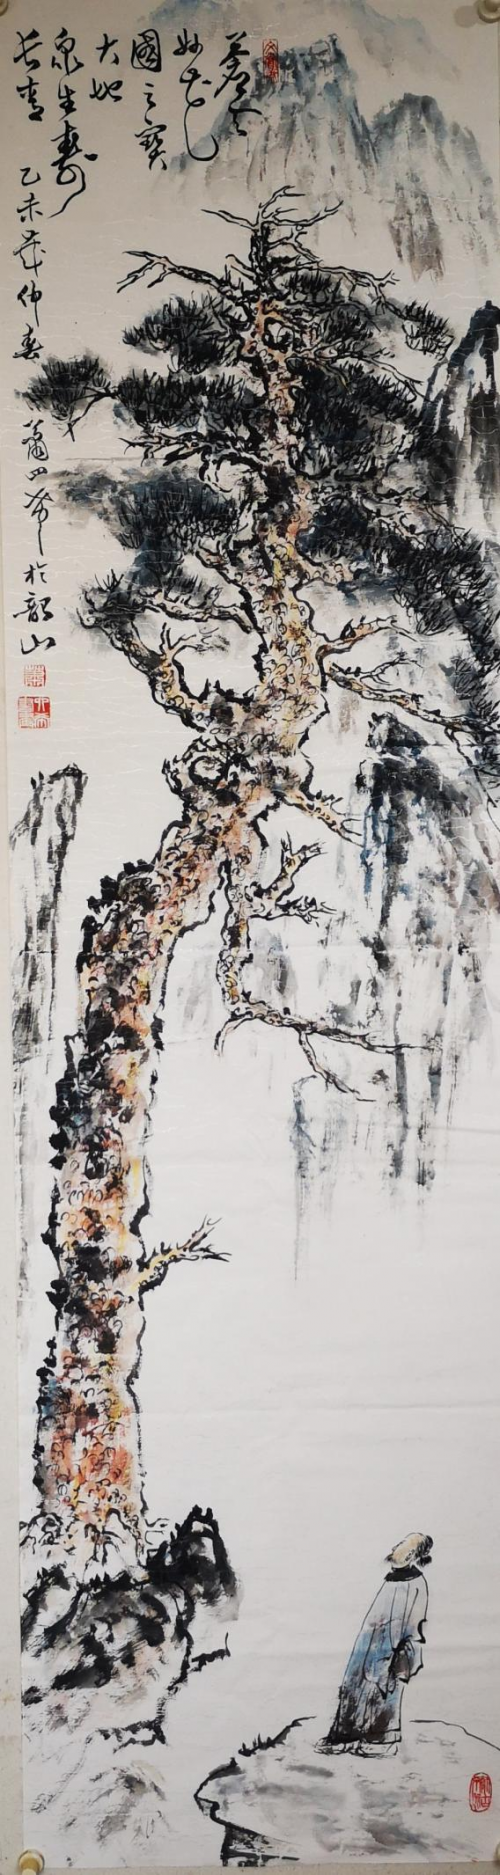 【政府采购艺术家代表】中国风范 国之瑰宝——萧四希精品手绘